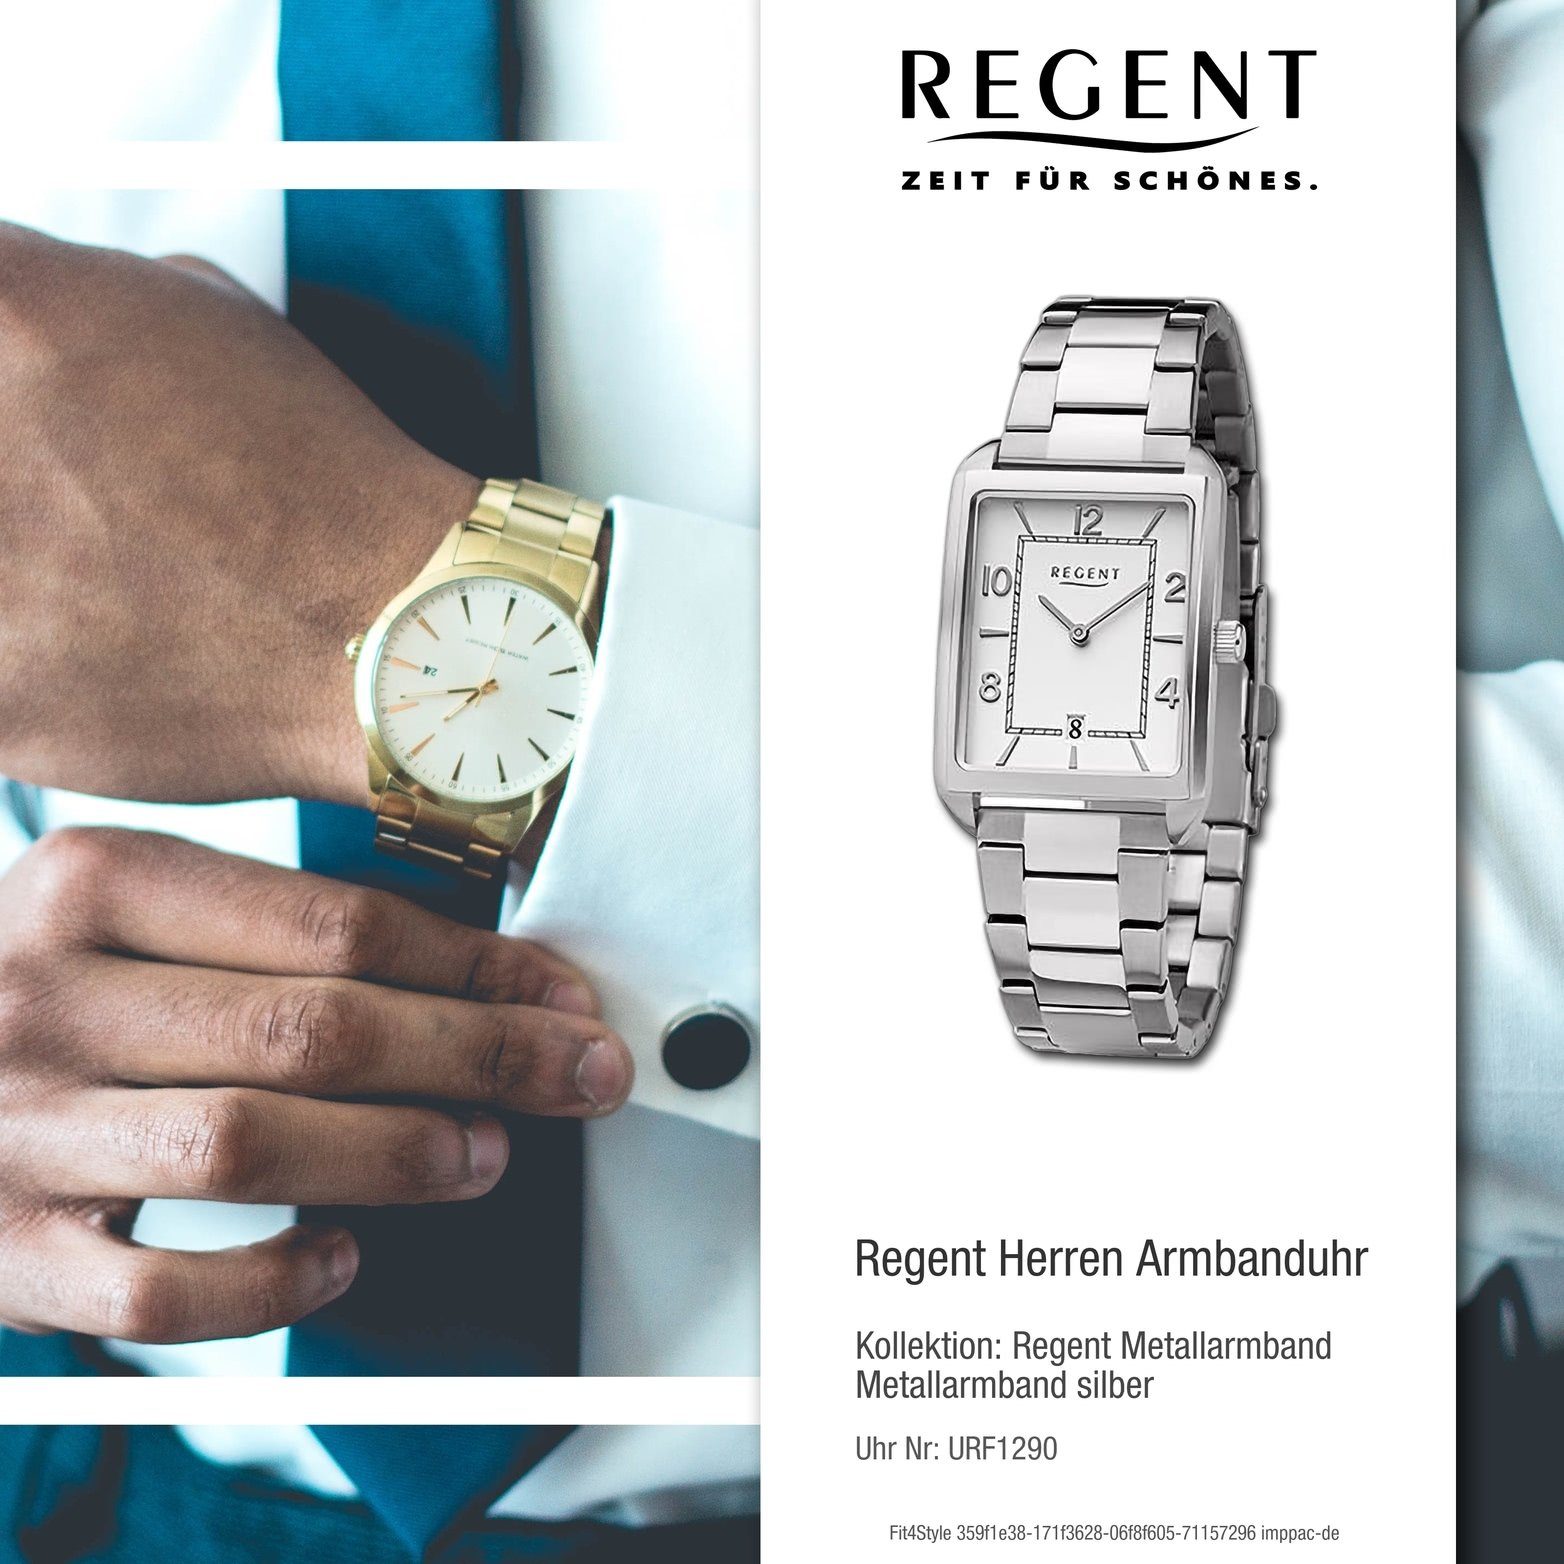 (ca. Quarzuhr Herren groß Gehäuse, Analog, 28,5x41,5mm) Herrenuhr Metallarmband Regent silber, rundes Armbanduhr Regent